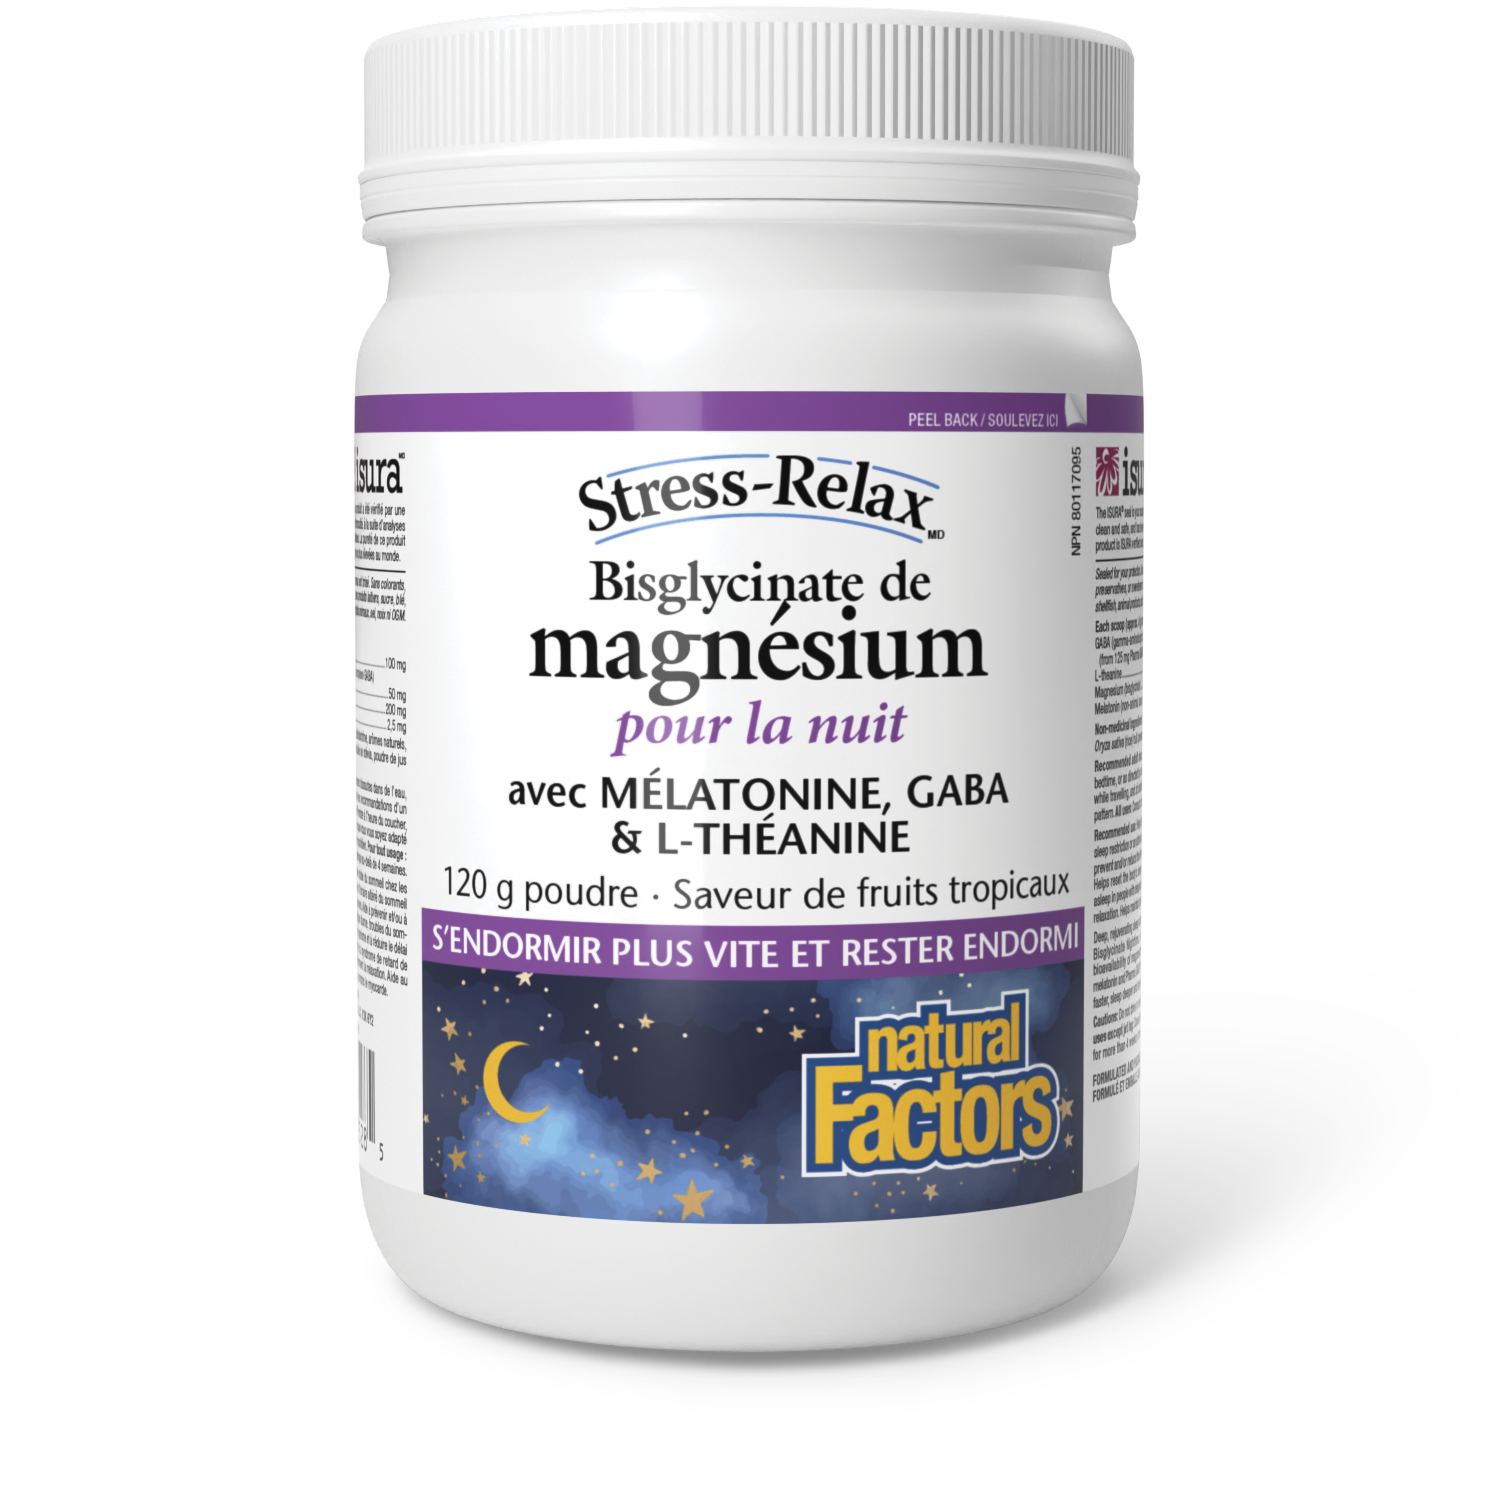 Bisglycinate de magnésium pour la nuit Stress-Relax, Natural Factors|v|image|3528